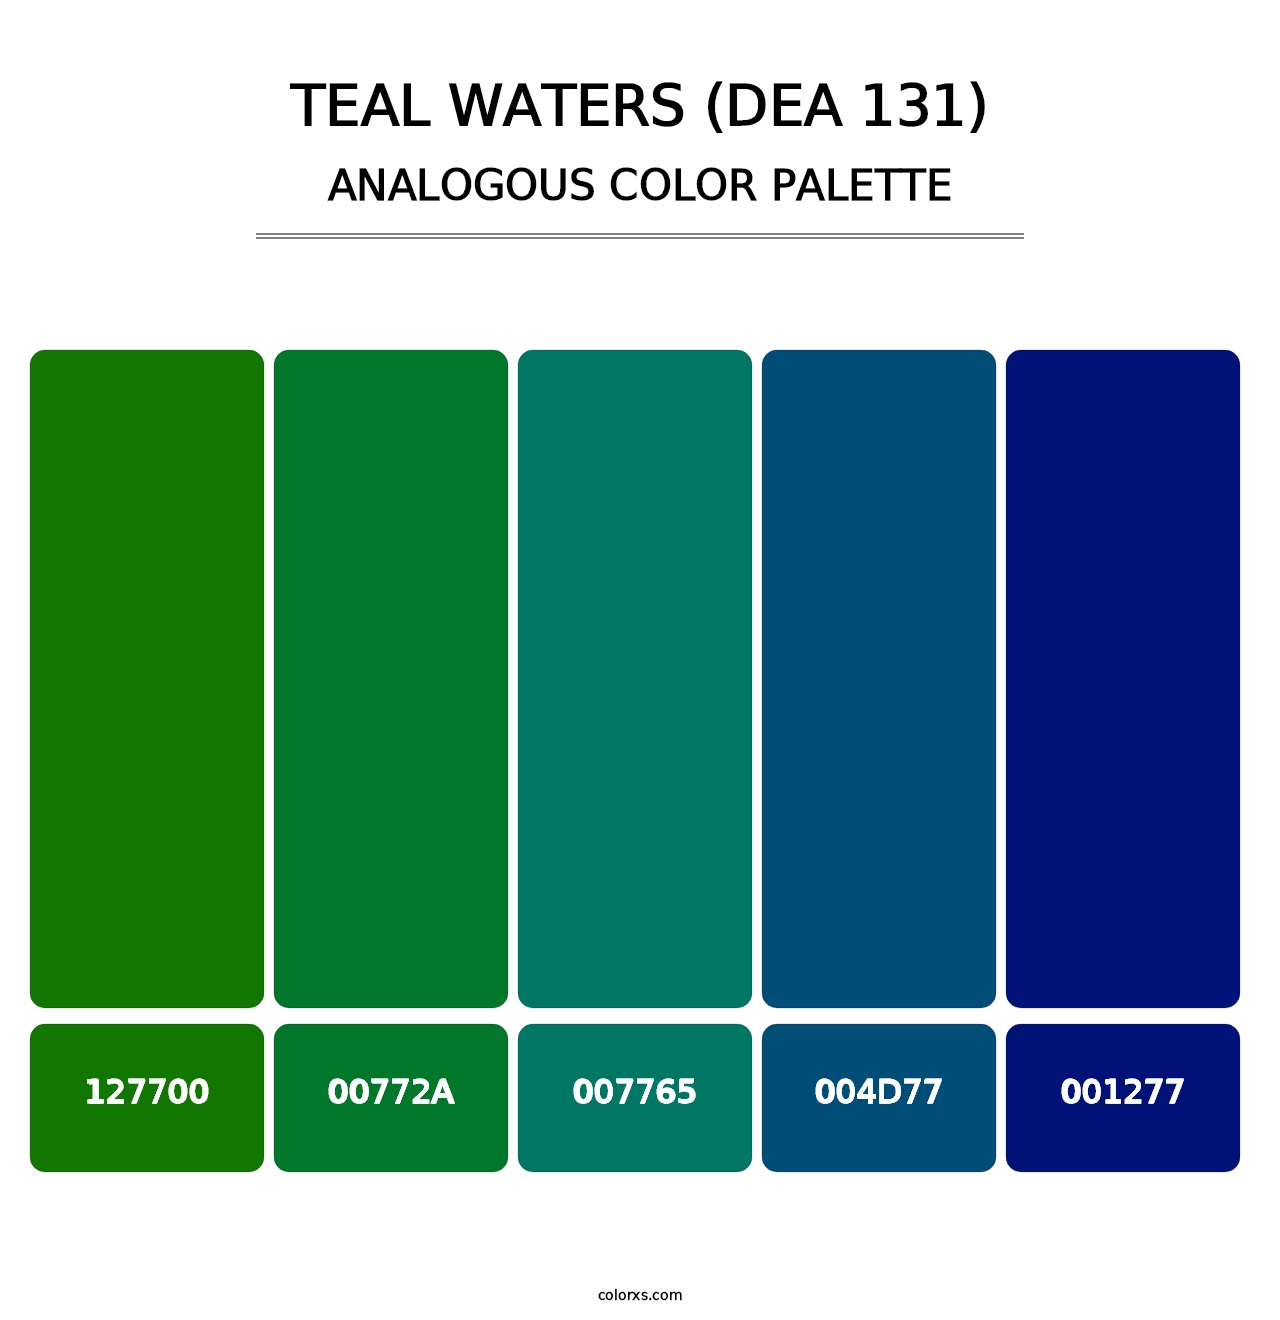 Teal Waters (DEA 131) - Analogous Color Palette